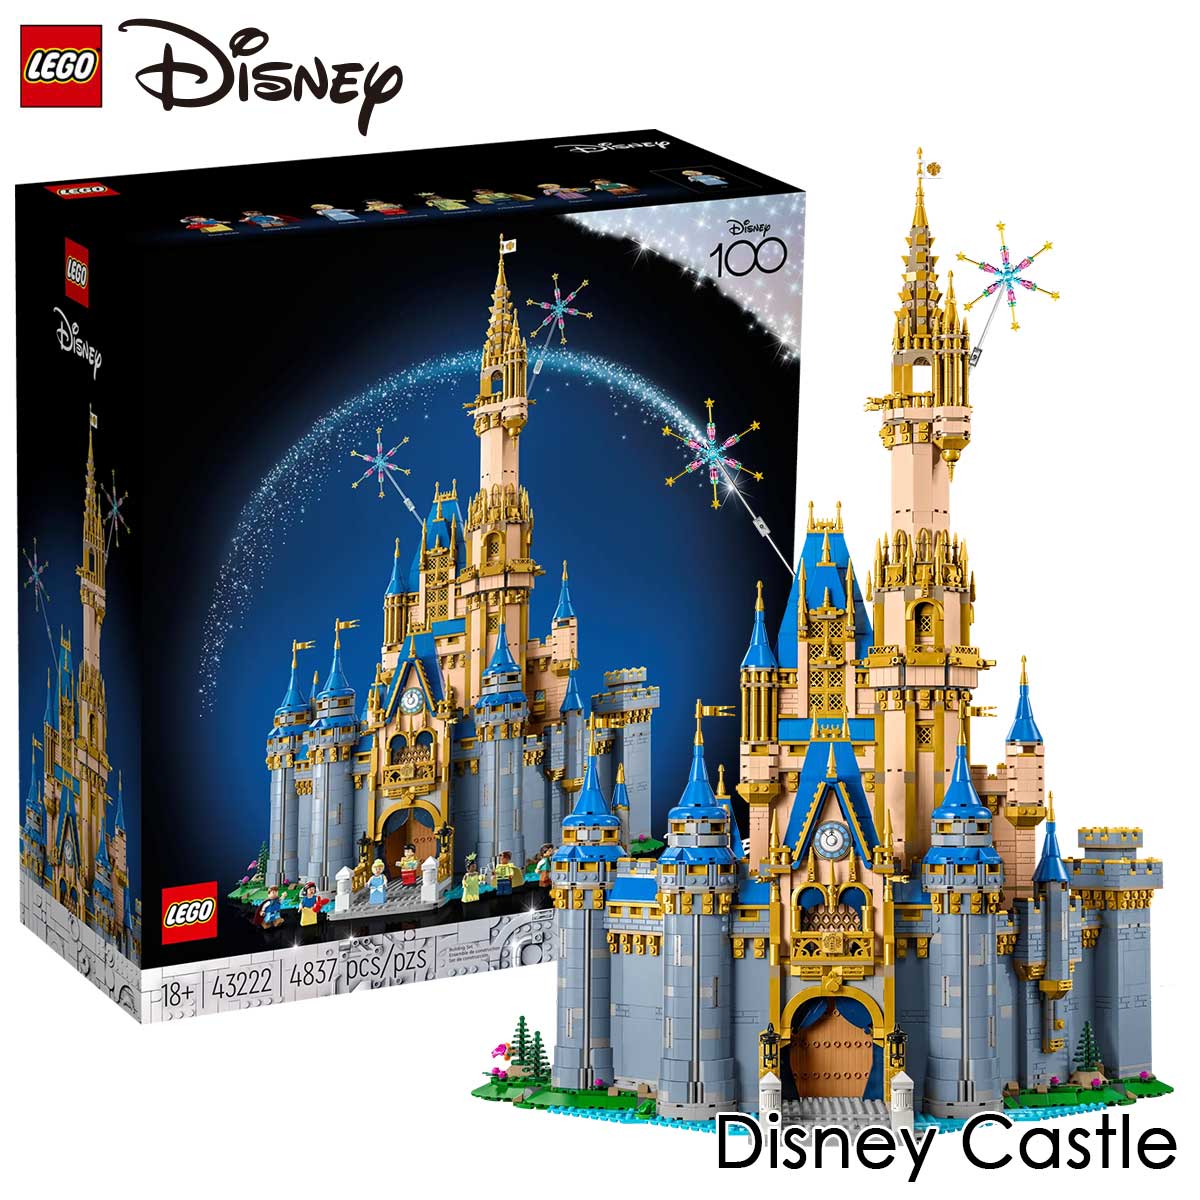 レゴ ディズニープリンセス レゴ(LEGO) レゴ ディズニー100 ディズニー キャッスル 43222 Disney Castle